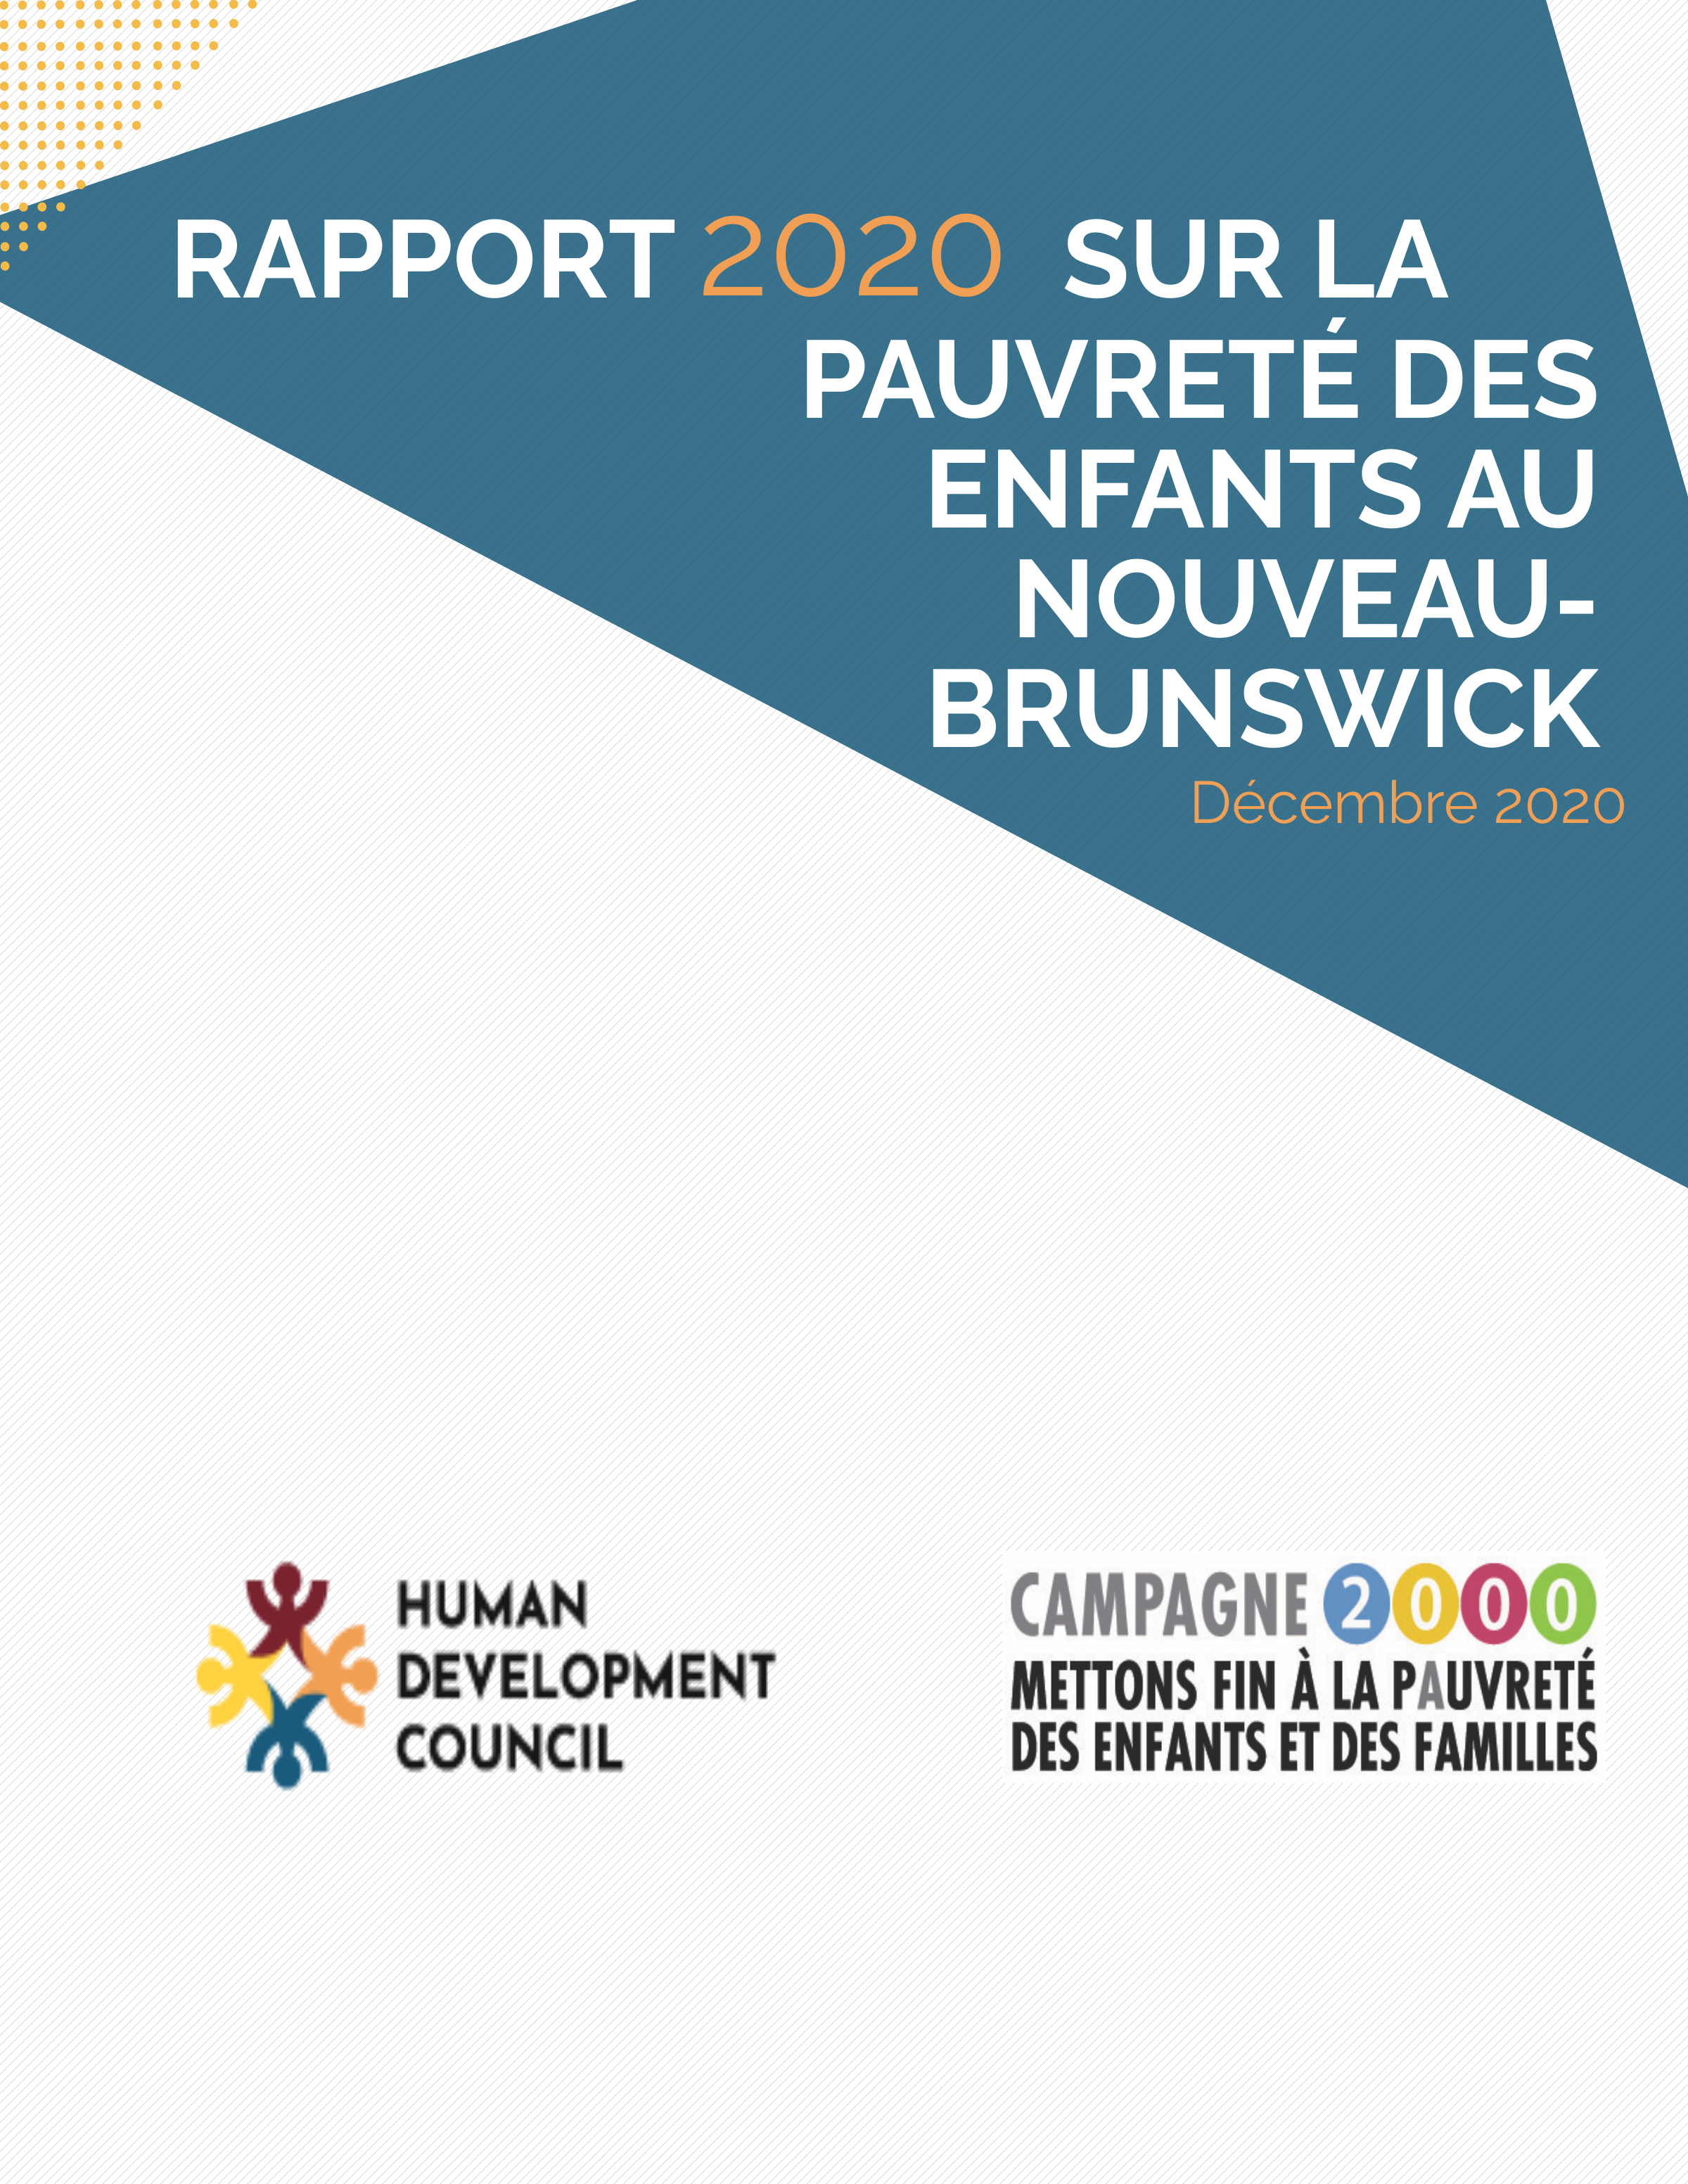 Rapport 2020 sur la pauvreté des enfants au Nouveau-Brunswick